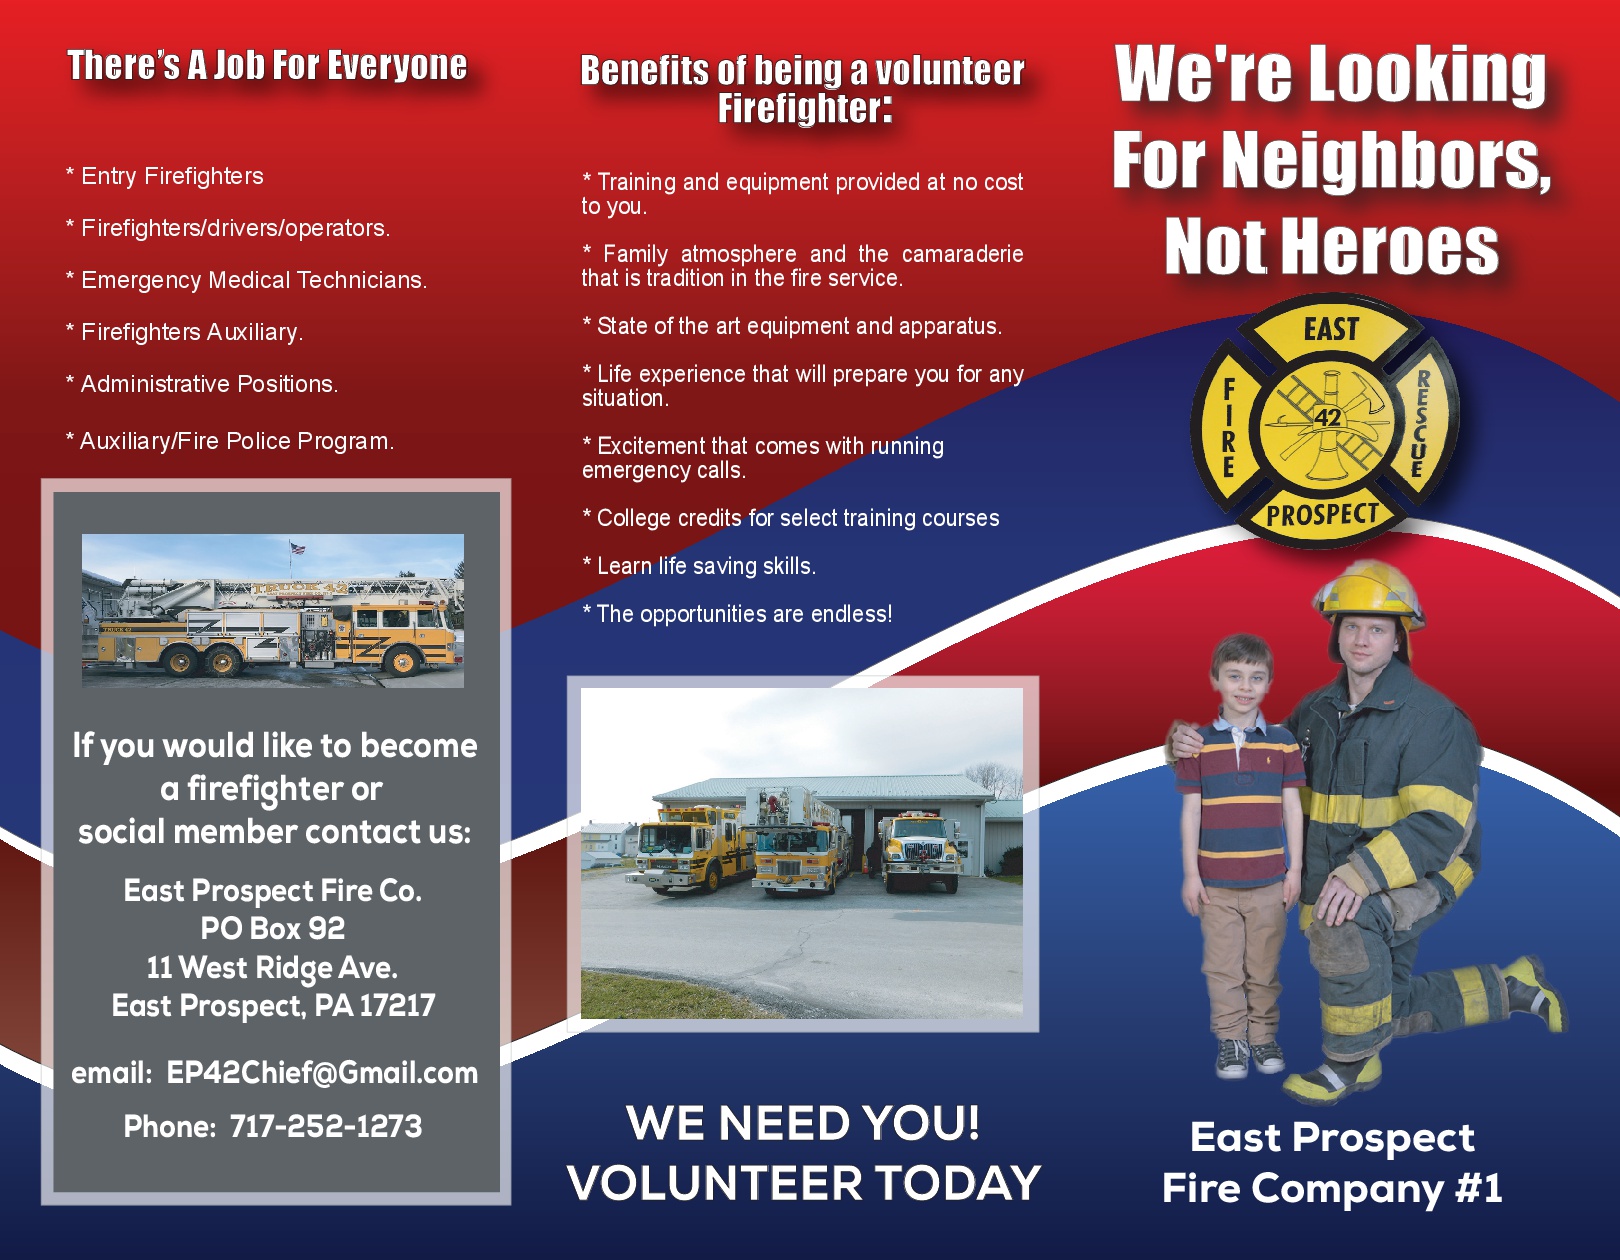 volunteer firefighter recruitment brocure firefighters needed